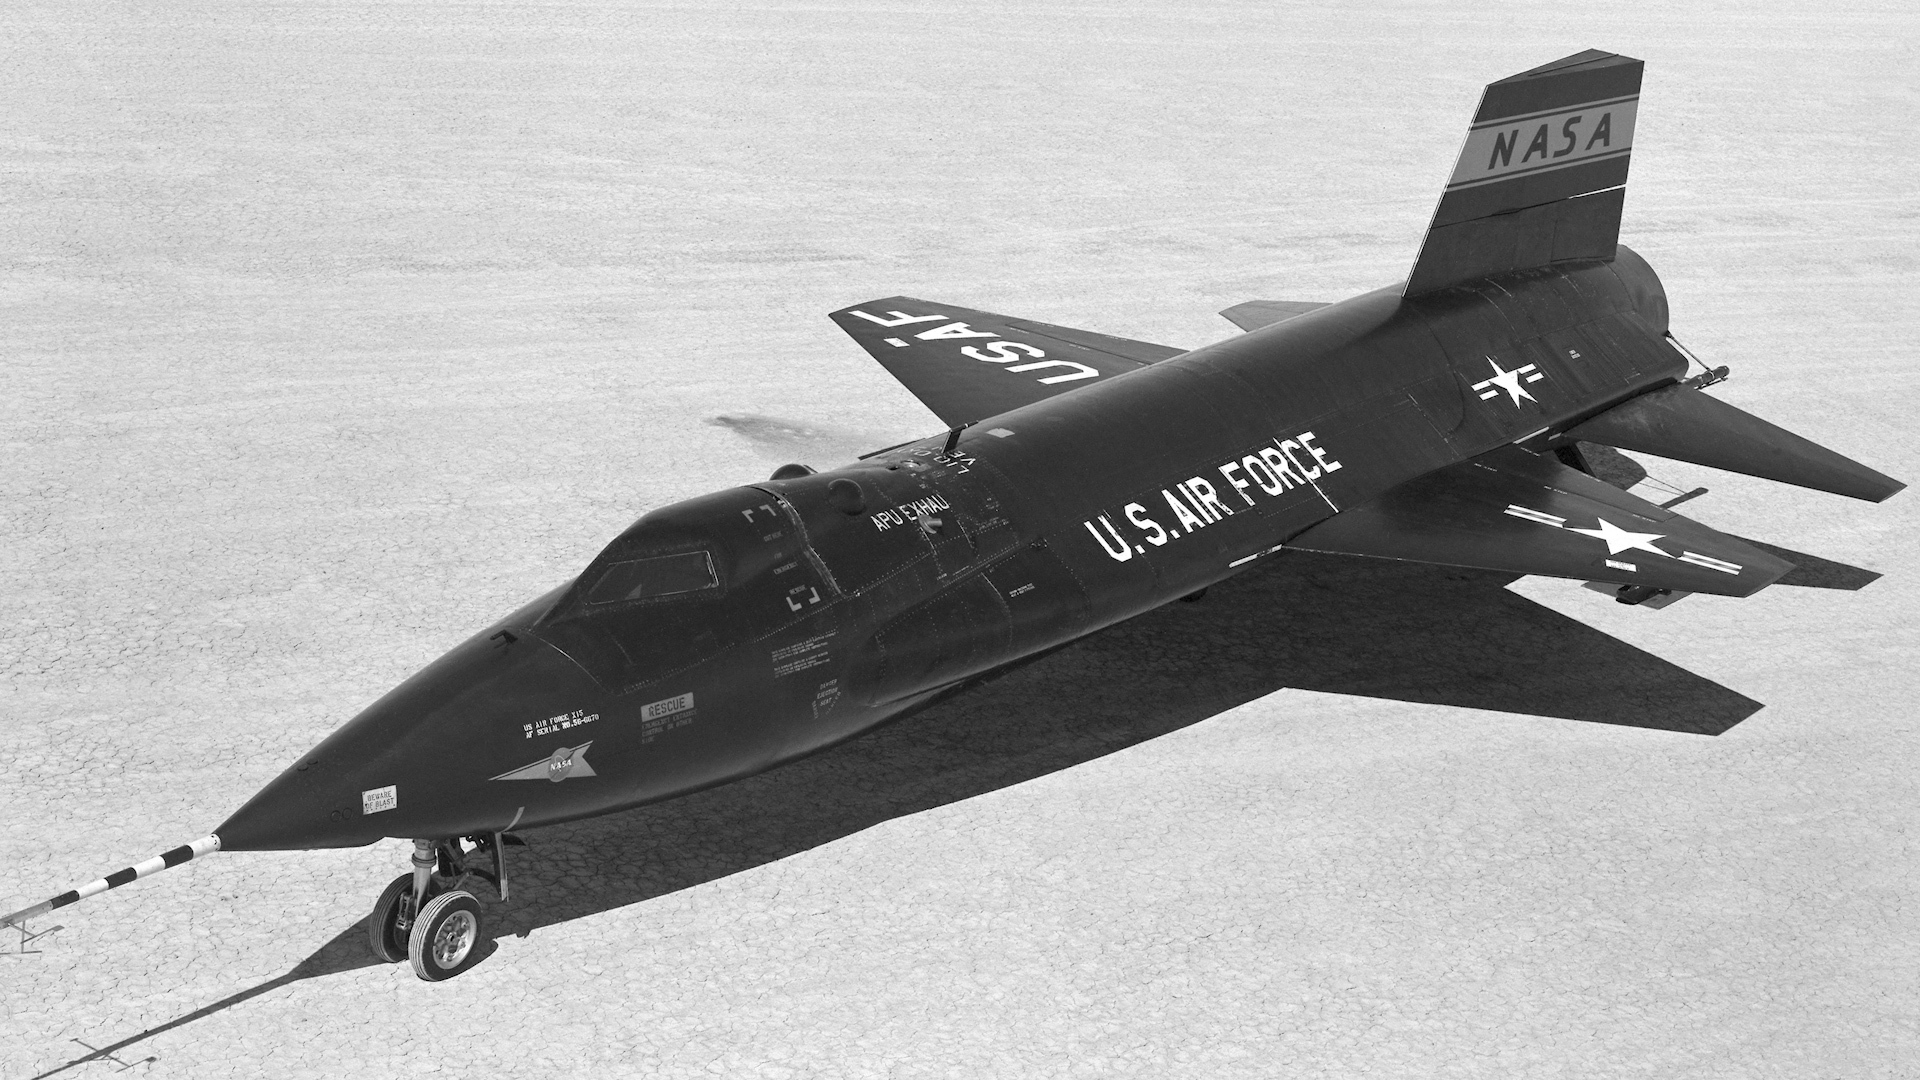 eftermiddag Kan ikke lide pels X-15: The fastest manned rocket plane ever - CNN Style